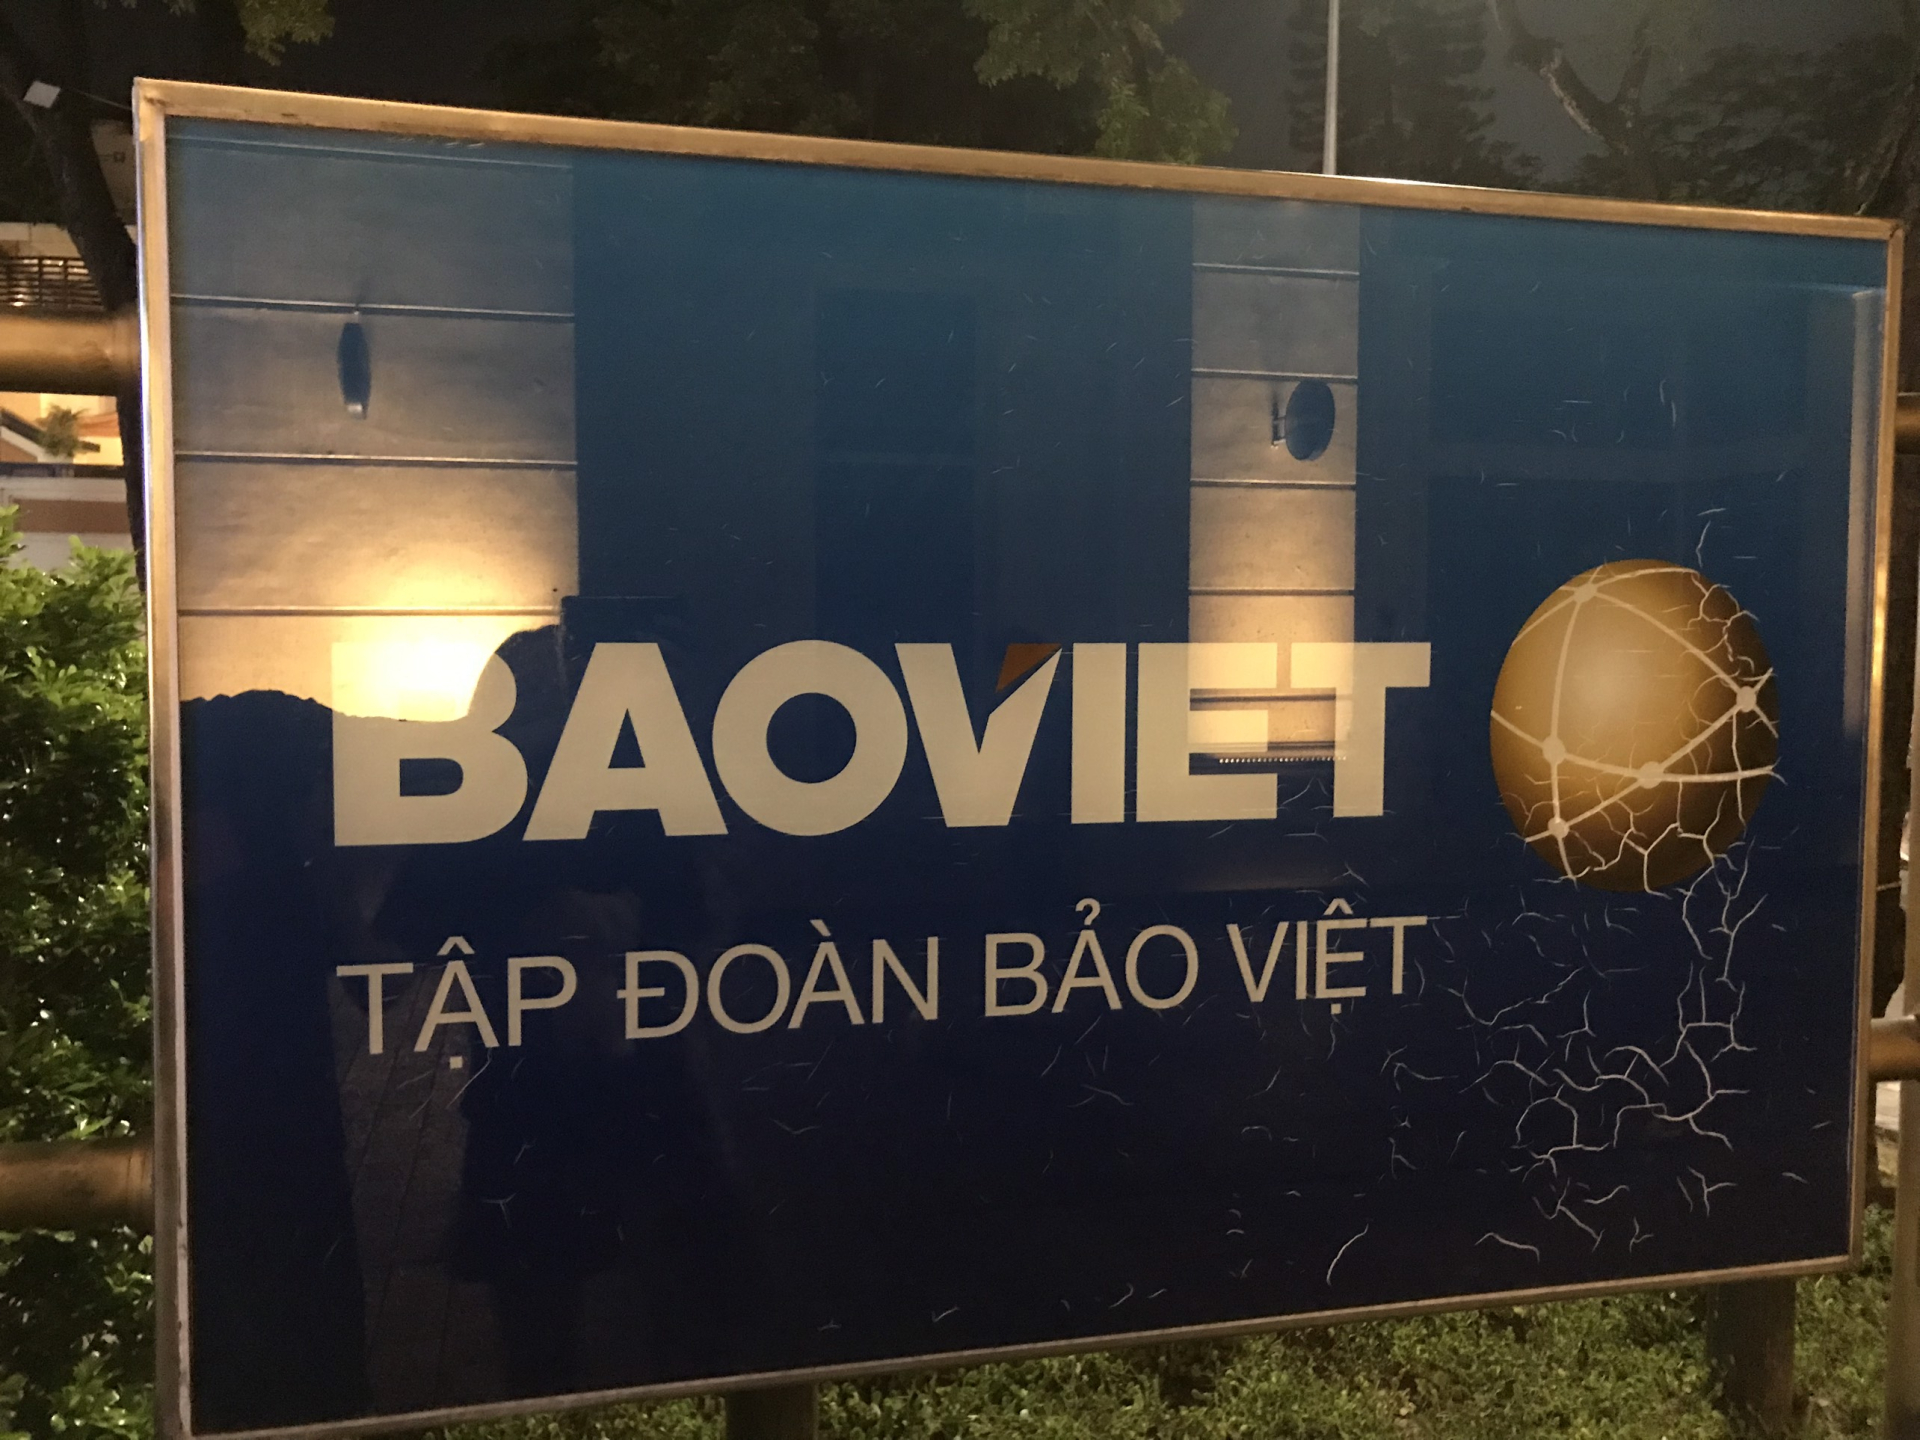 Tập đoàn Bảo Việt lại thêm một quý kinh doanh không mấy khả quan